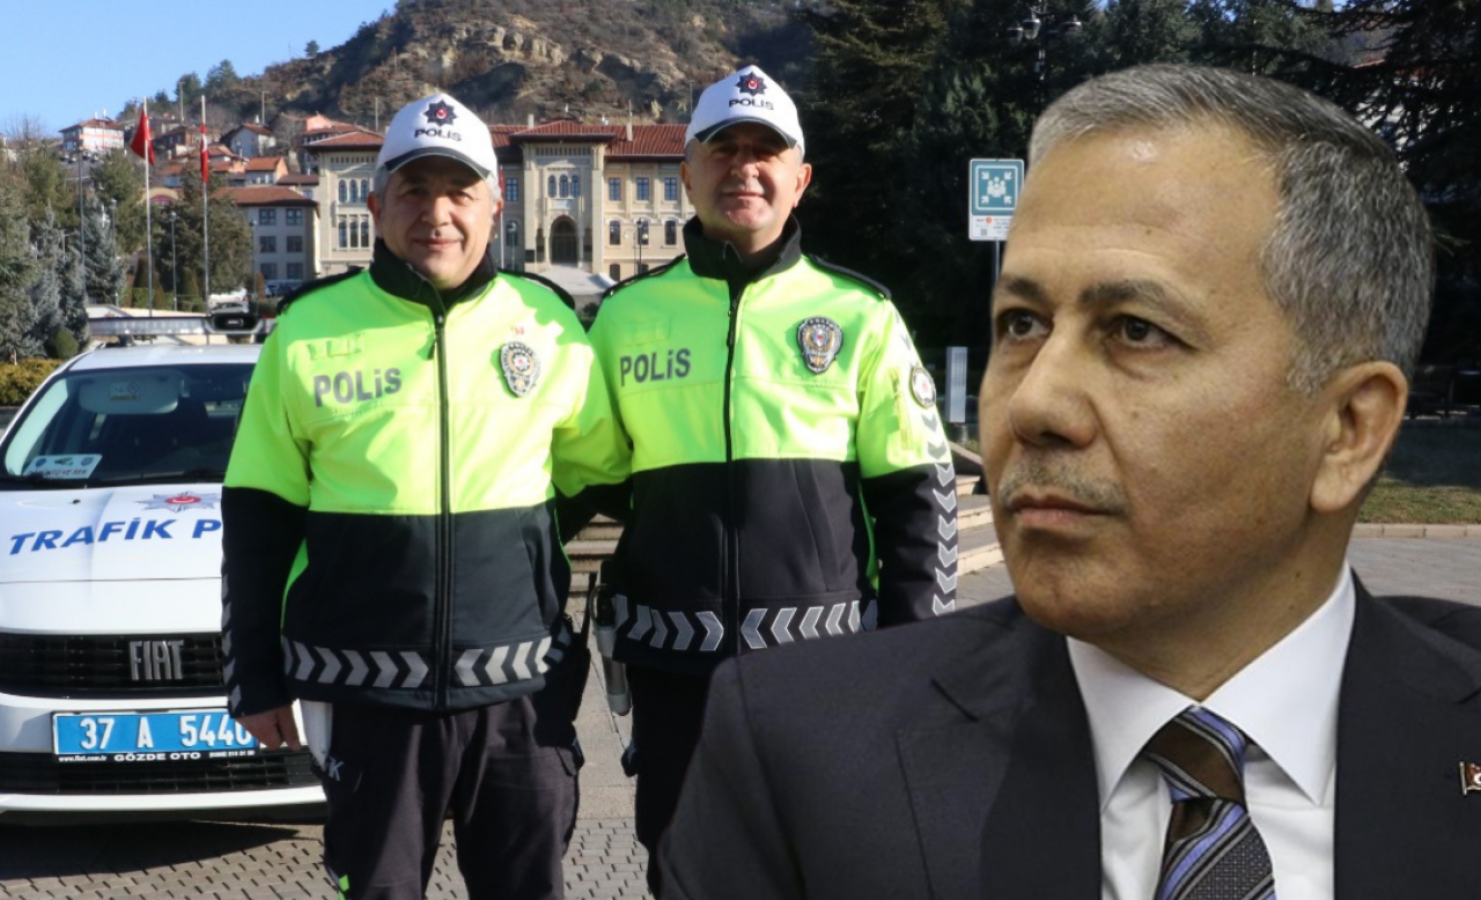 İçişleri Bakanlığı’ndan Kastamonu’daki kahraman polislere teşekkür;